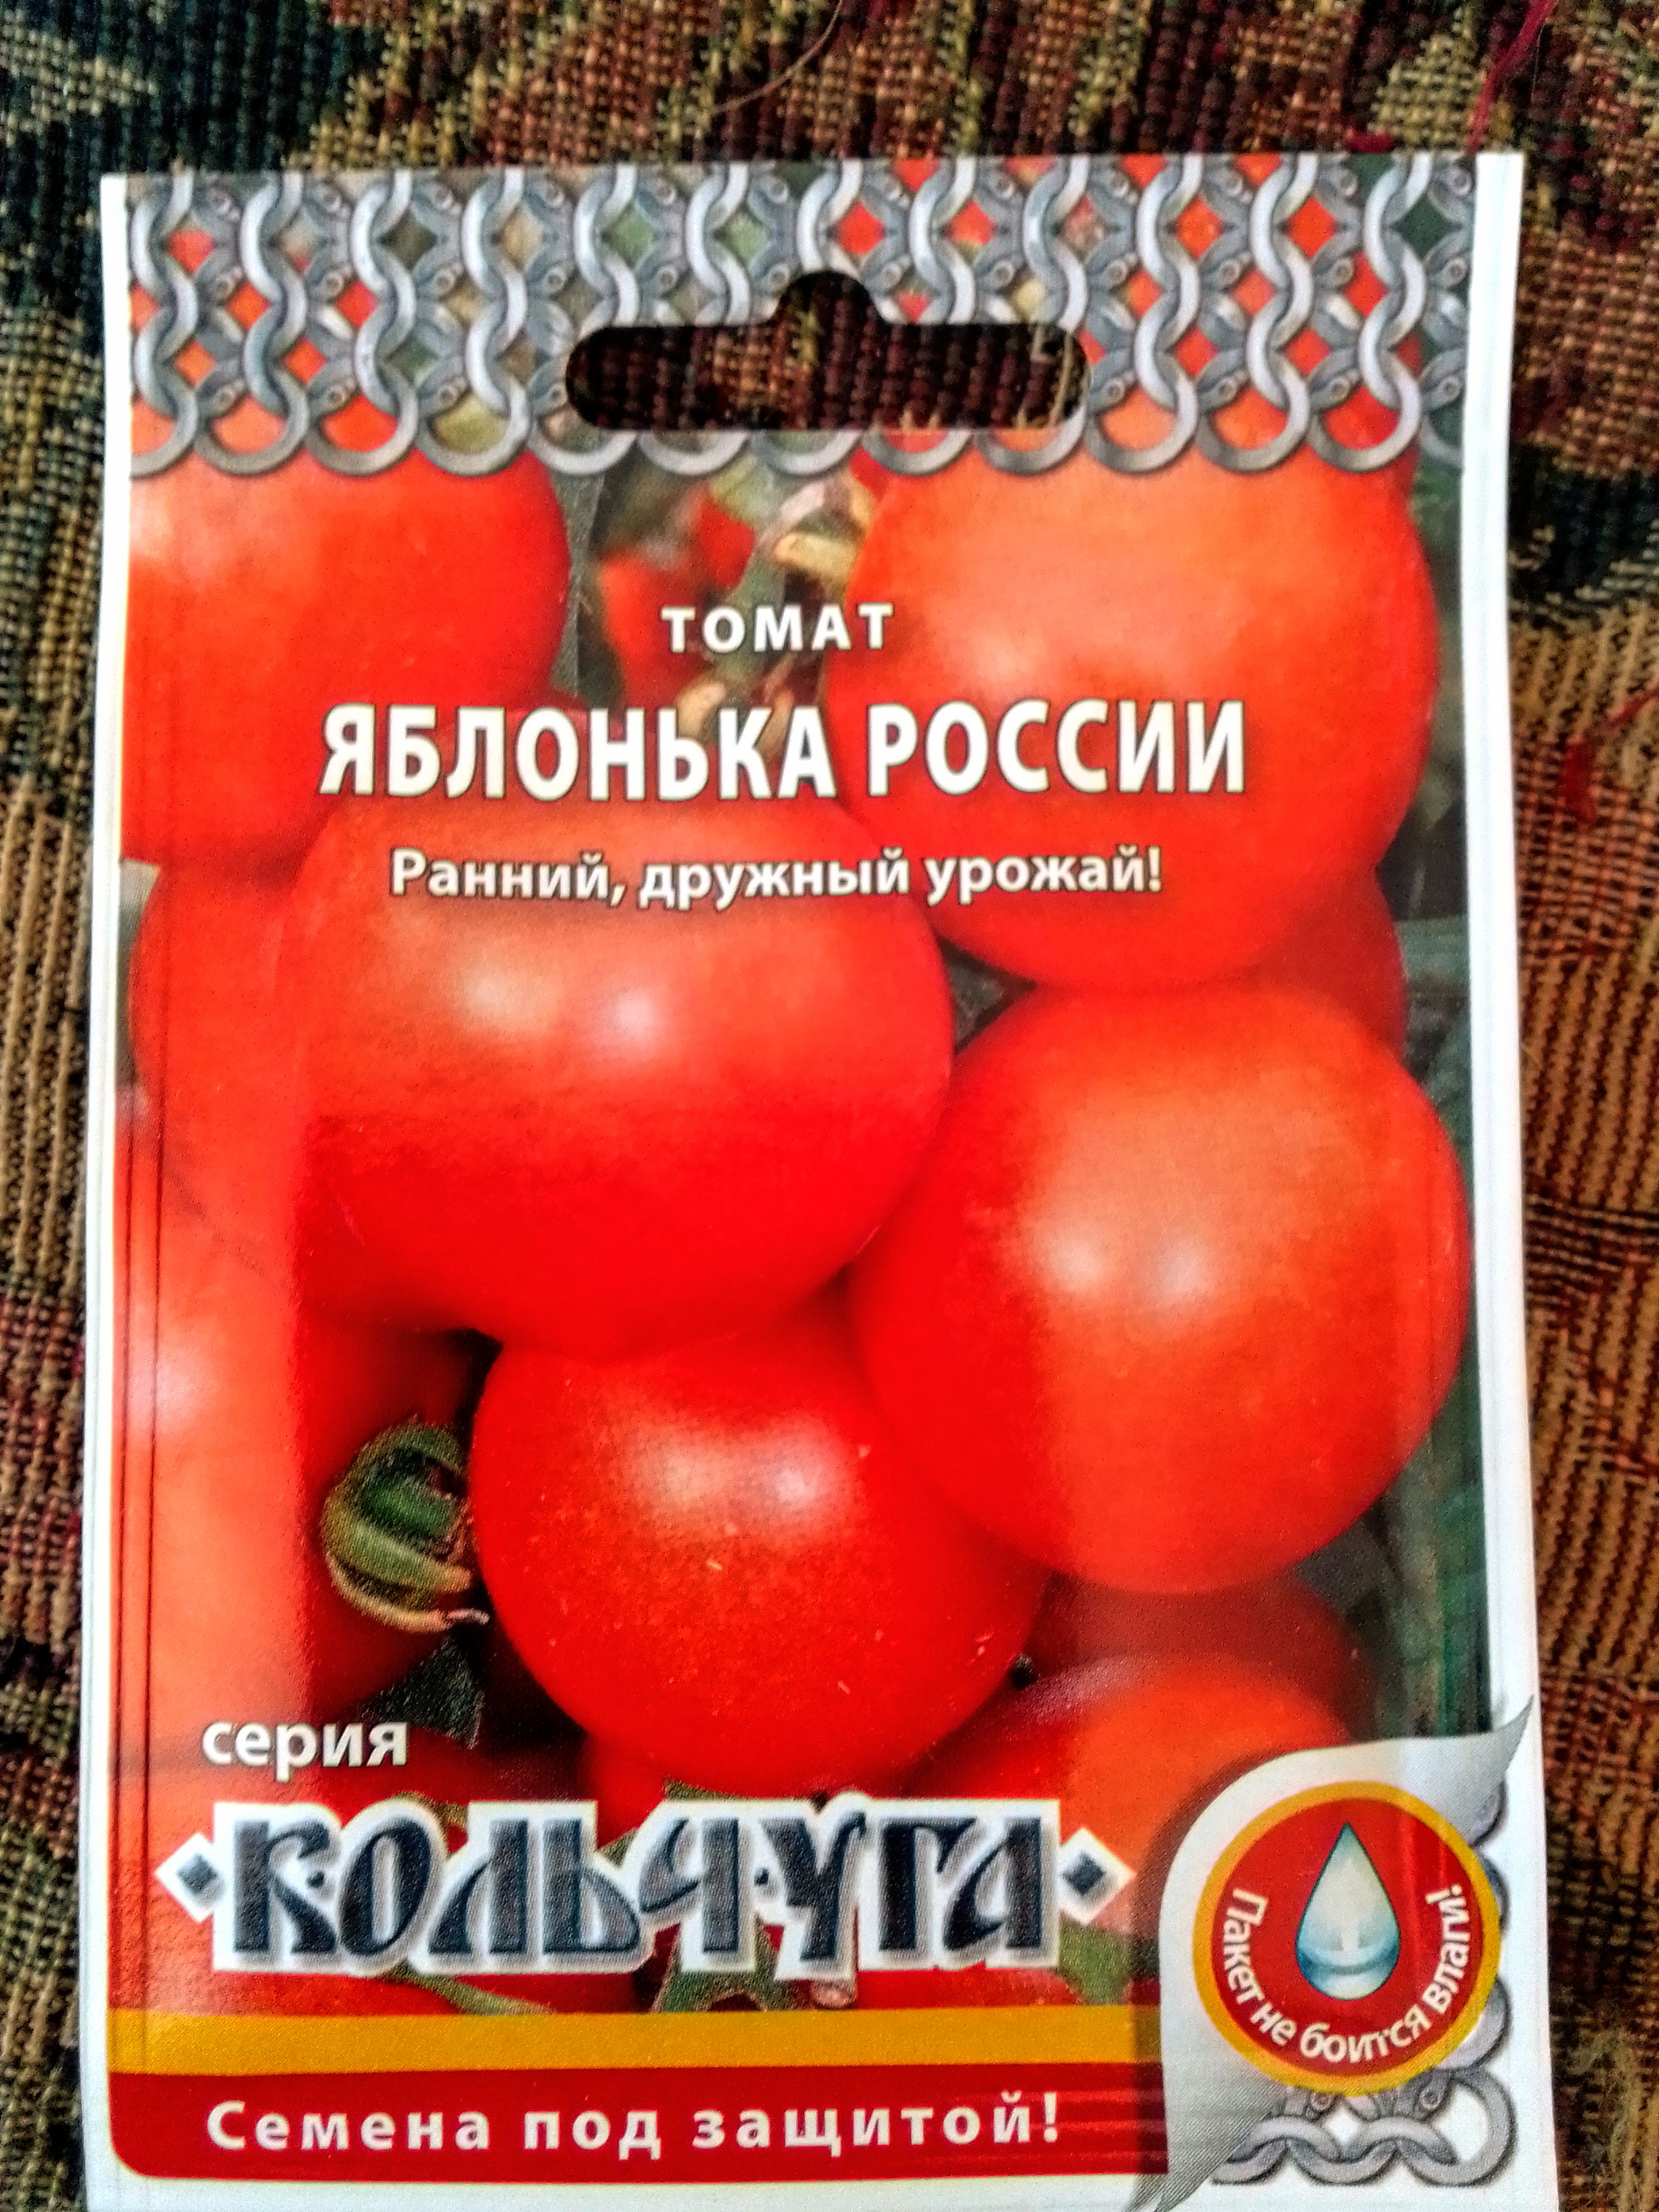 Яблонька россии томат описание отзывы характеристика сорта